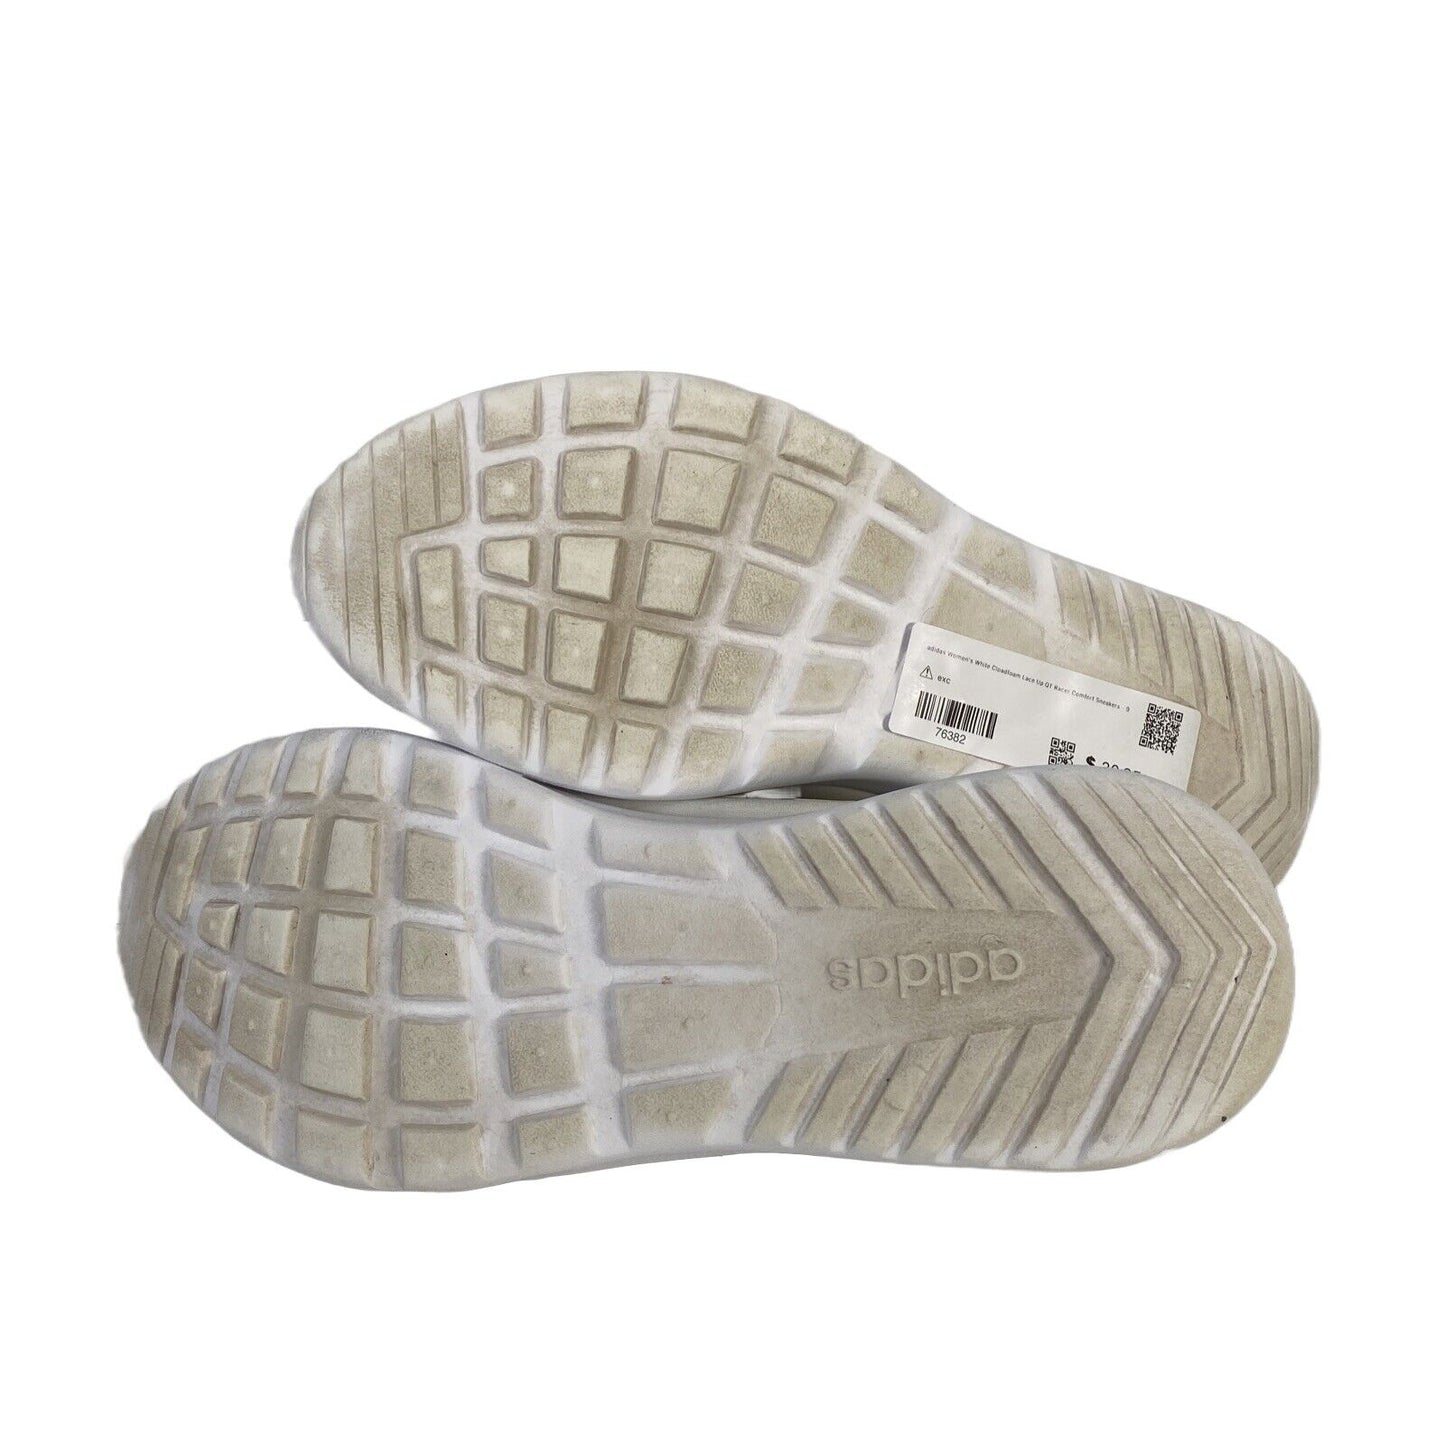 Adidas Zapatillas QT Racer Comfort con cordones Cloadfoam blancas para mujer - 9